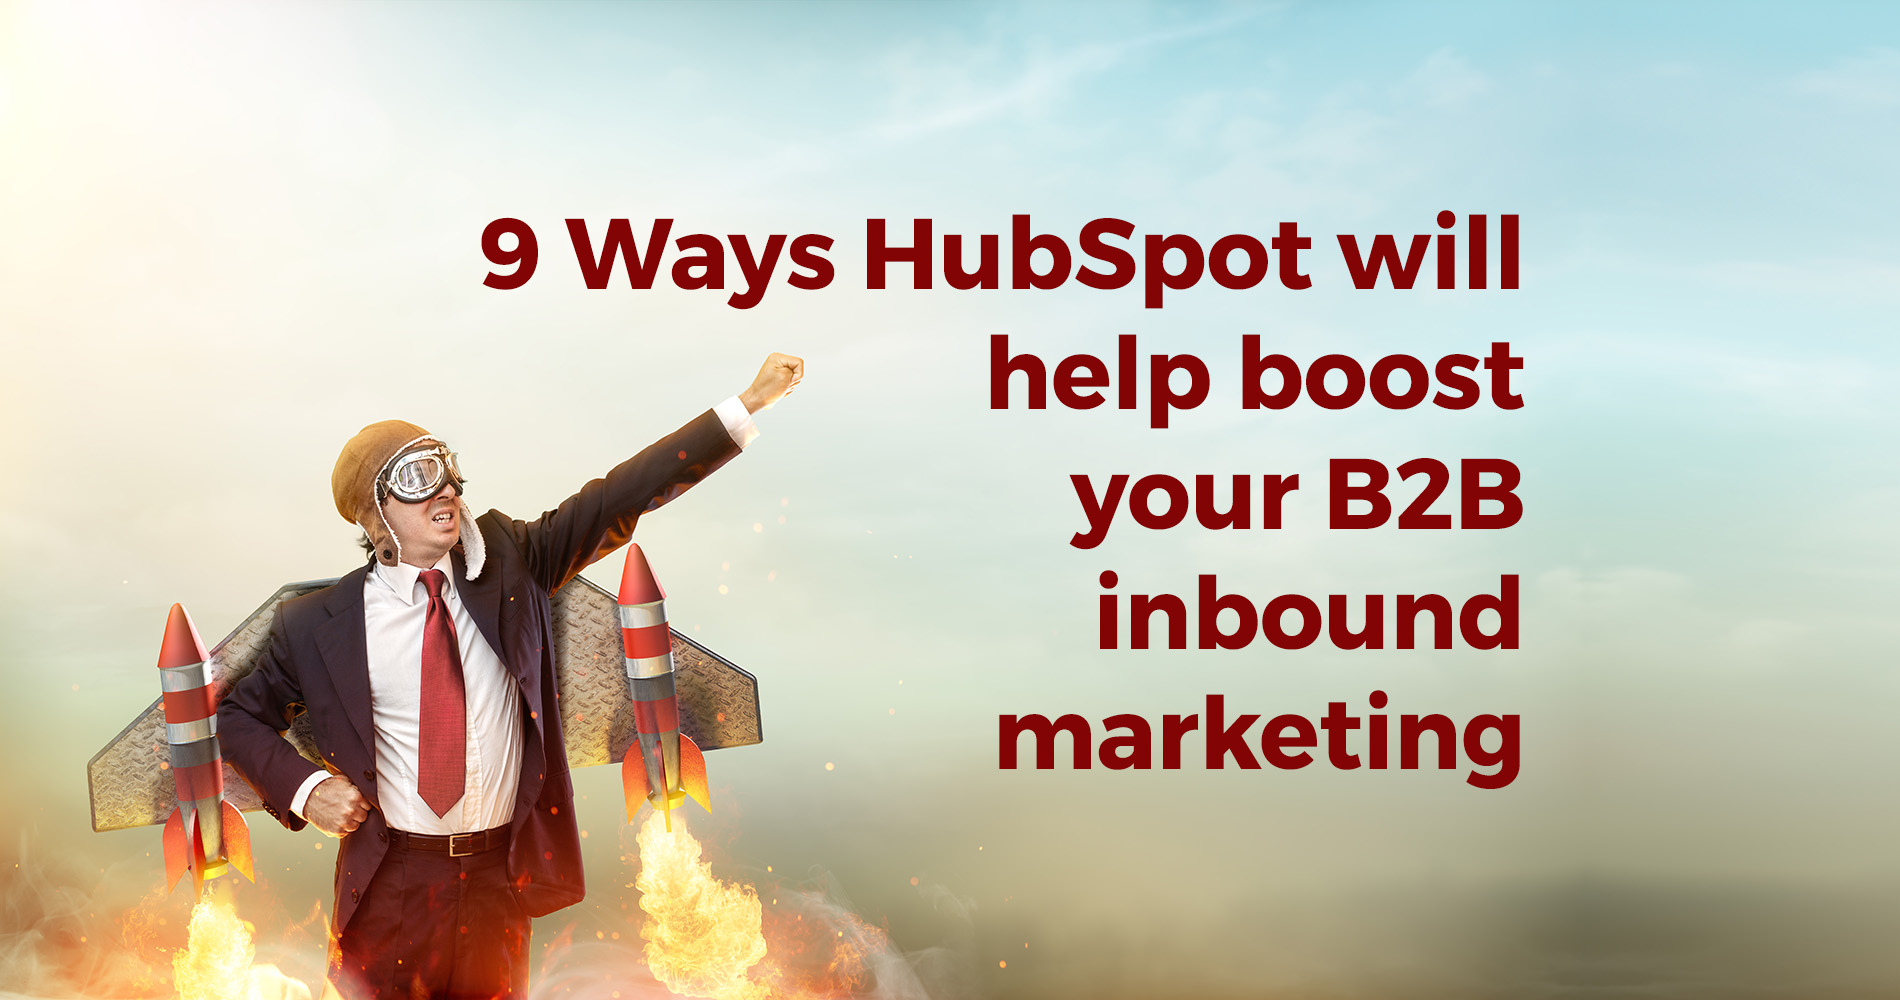 9 ways HubSpot will help boost your B2B inbound marketing